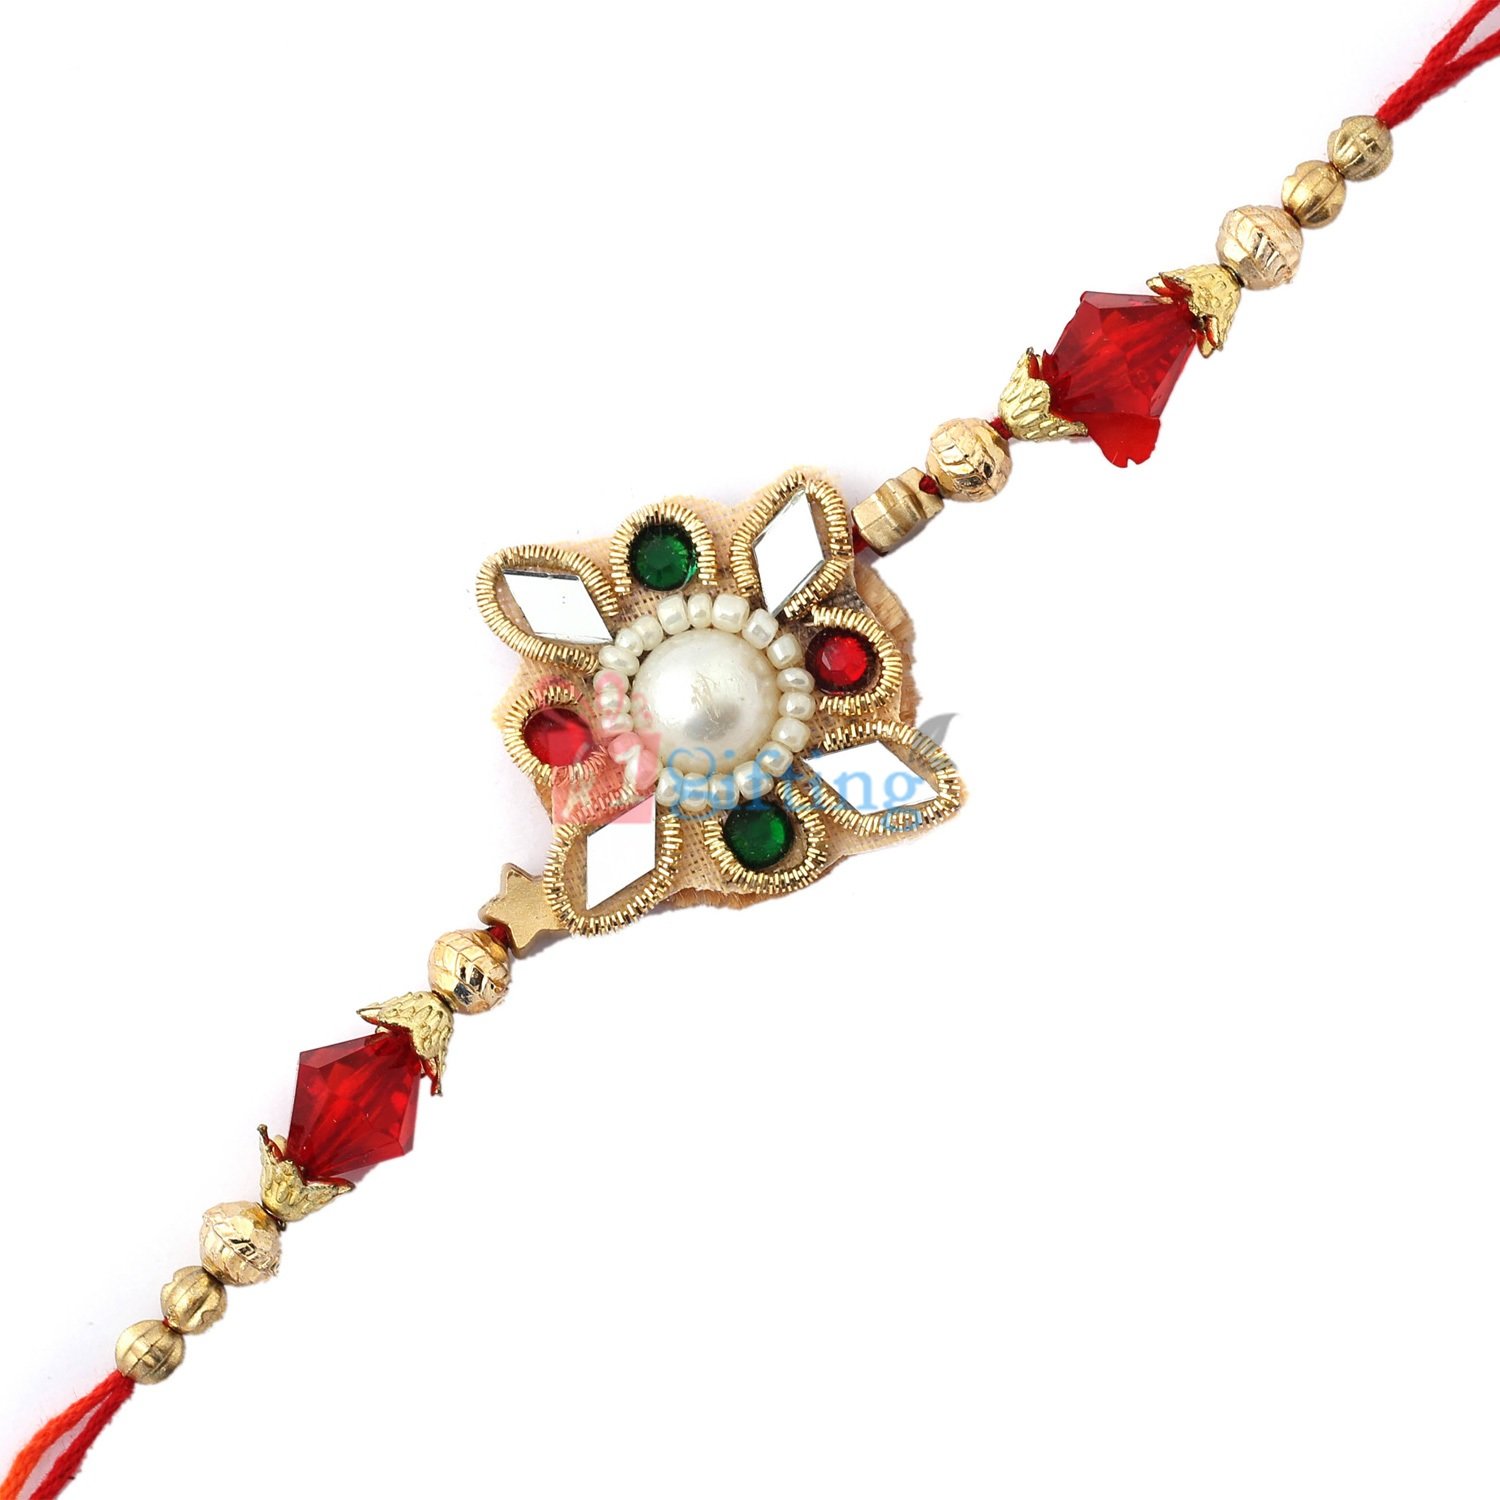 Elegant work of Glass, zardosi and golden beads with pearl in center Rakhi